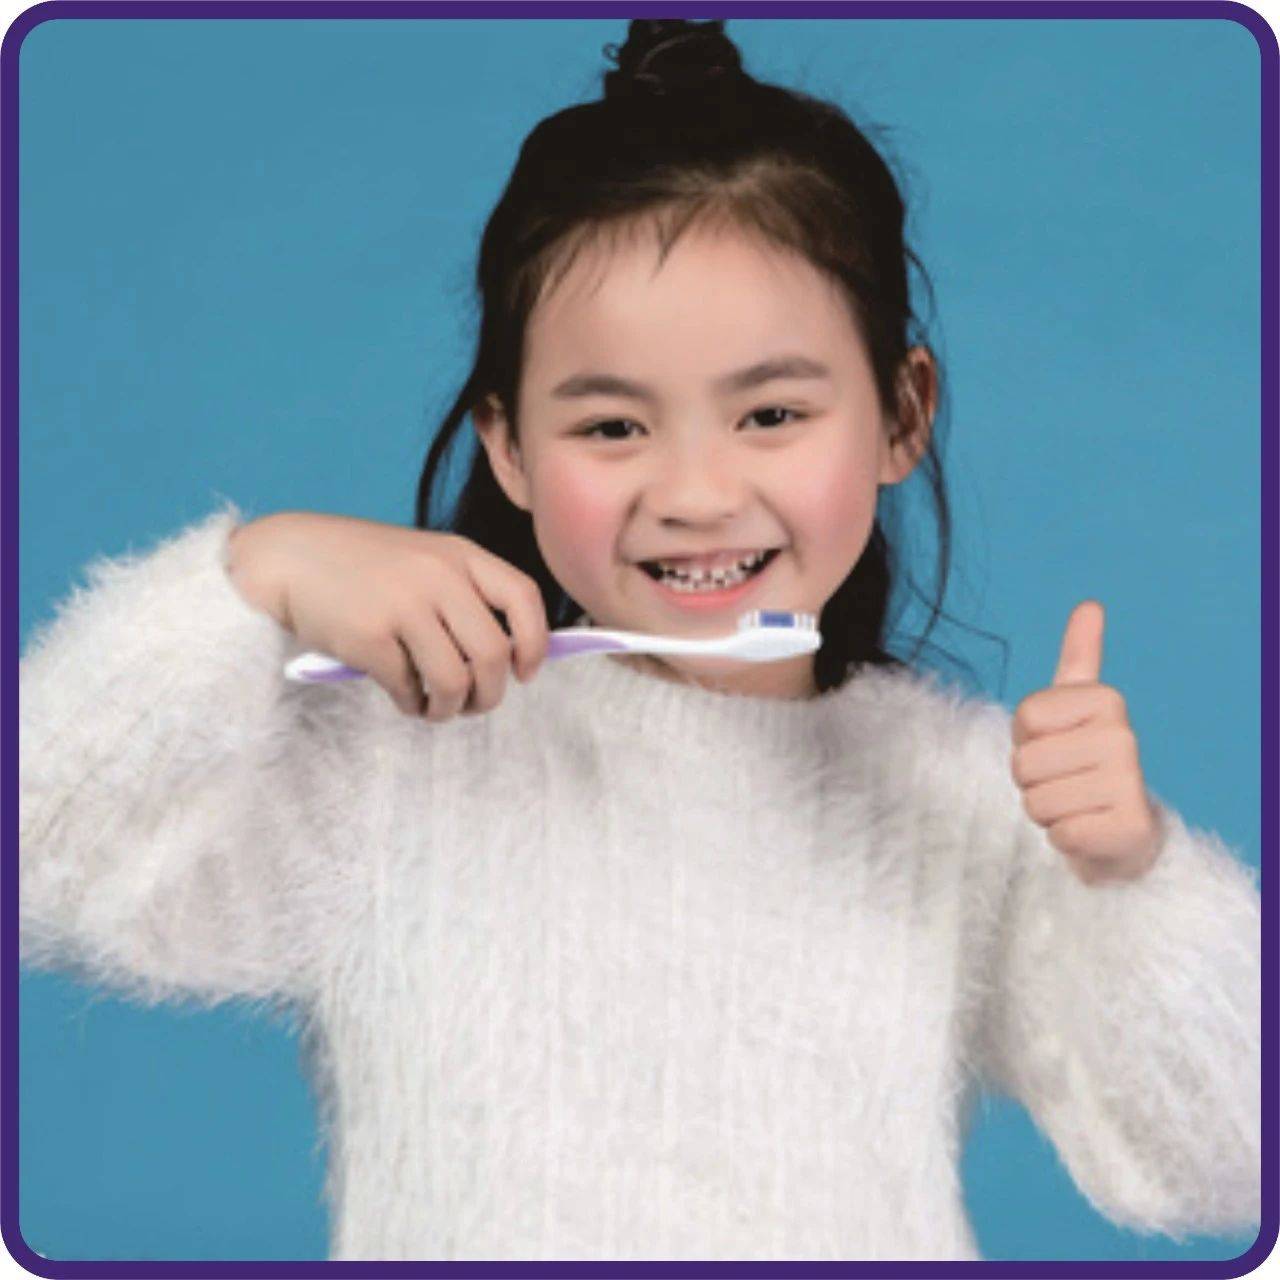 小孩换牙牙分布图及时间（儿童的换牙时间和顺序是什么呢？我们应该注意什么） | 说明书网